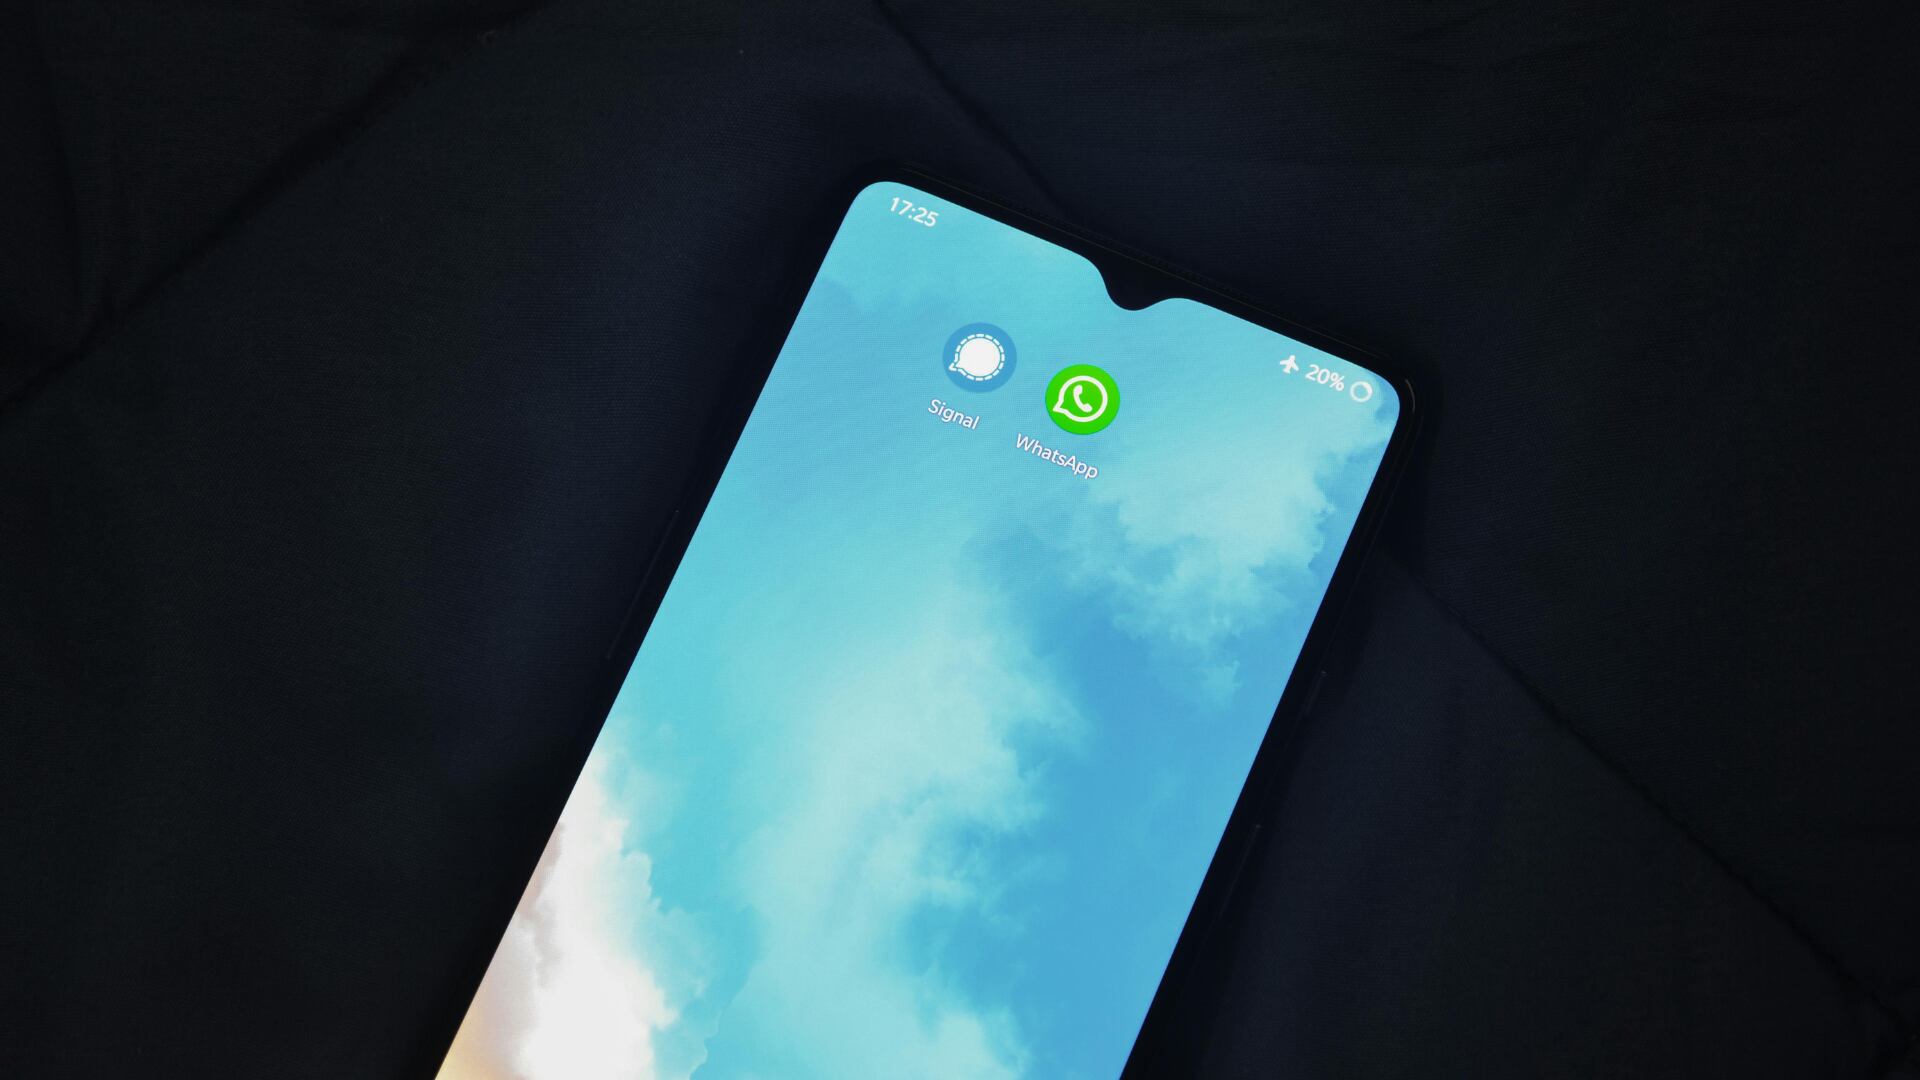 Whatsapp: ahora podrías personalizar el color de la burbuja de chat